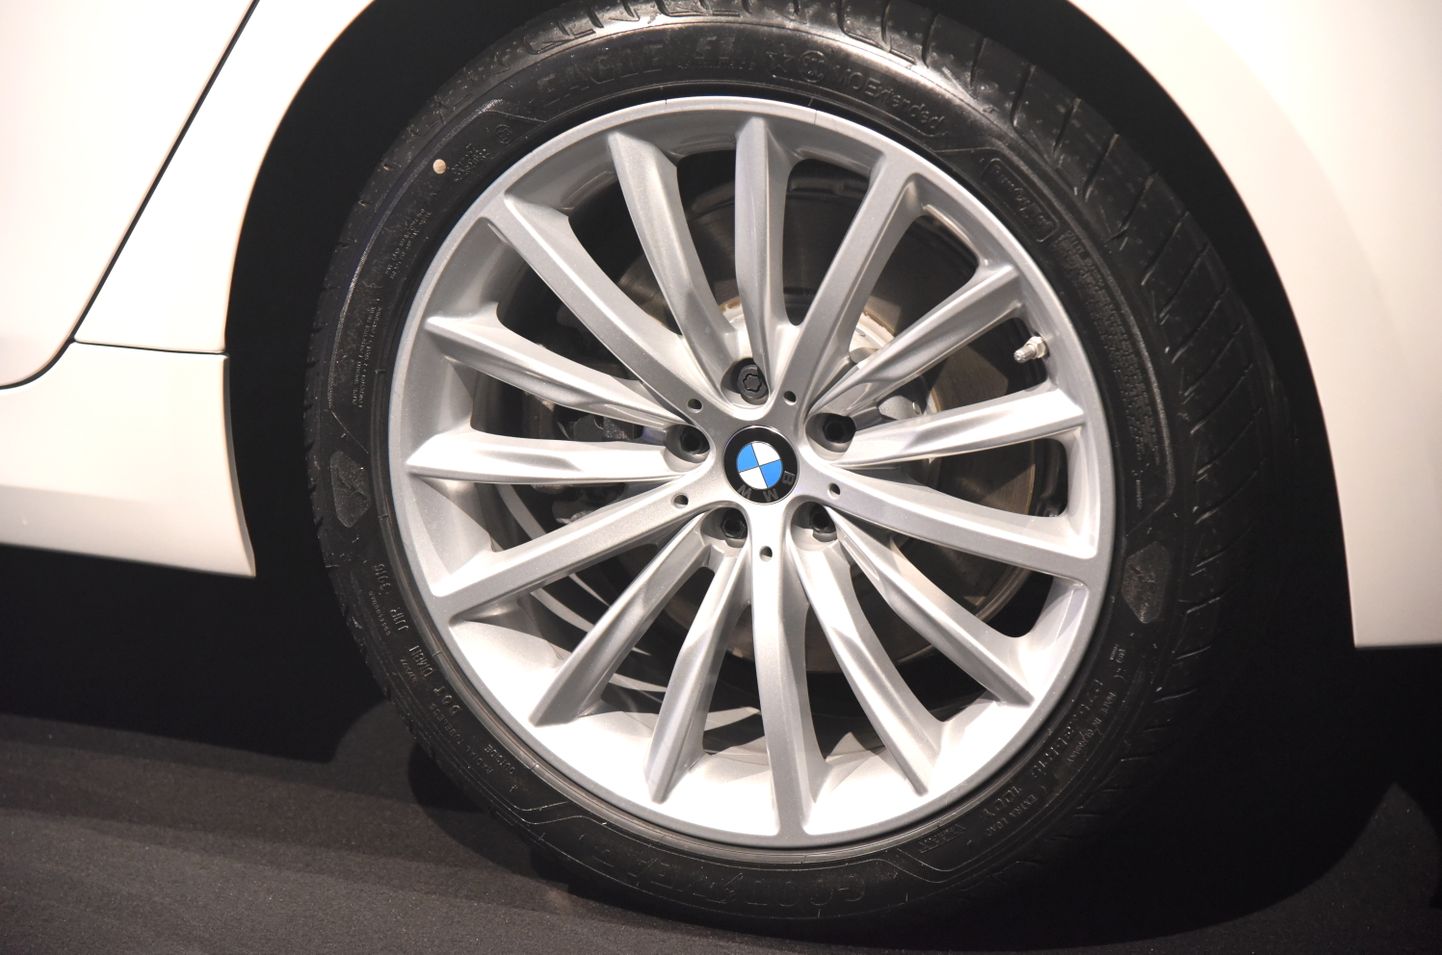 Jaunās "BMW" 5.sērijas septītās paaudzes automašīnas prezentācijas pasākums arhitektūras un mediju centrā "H2O6".